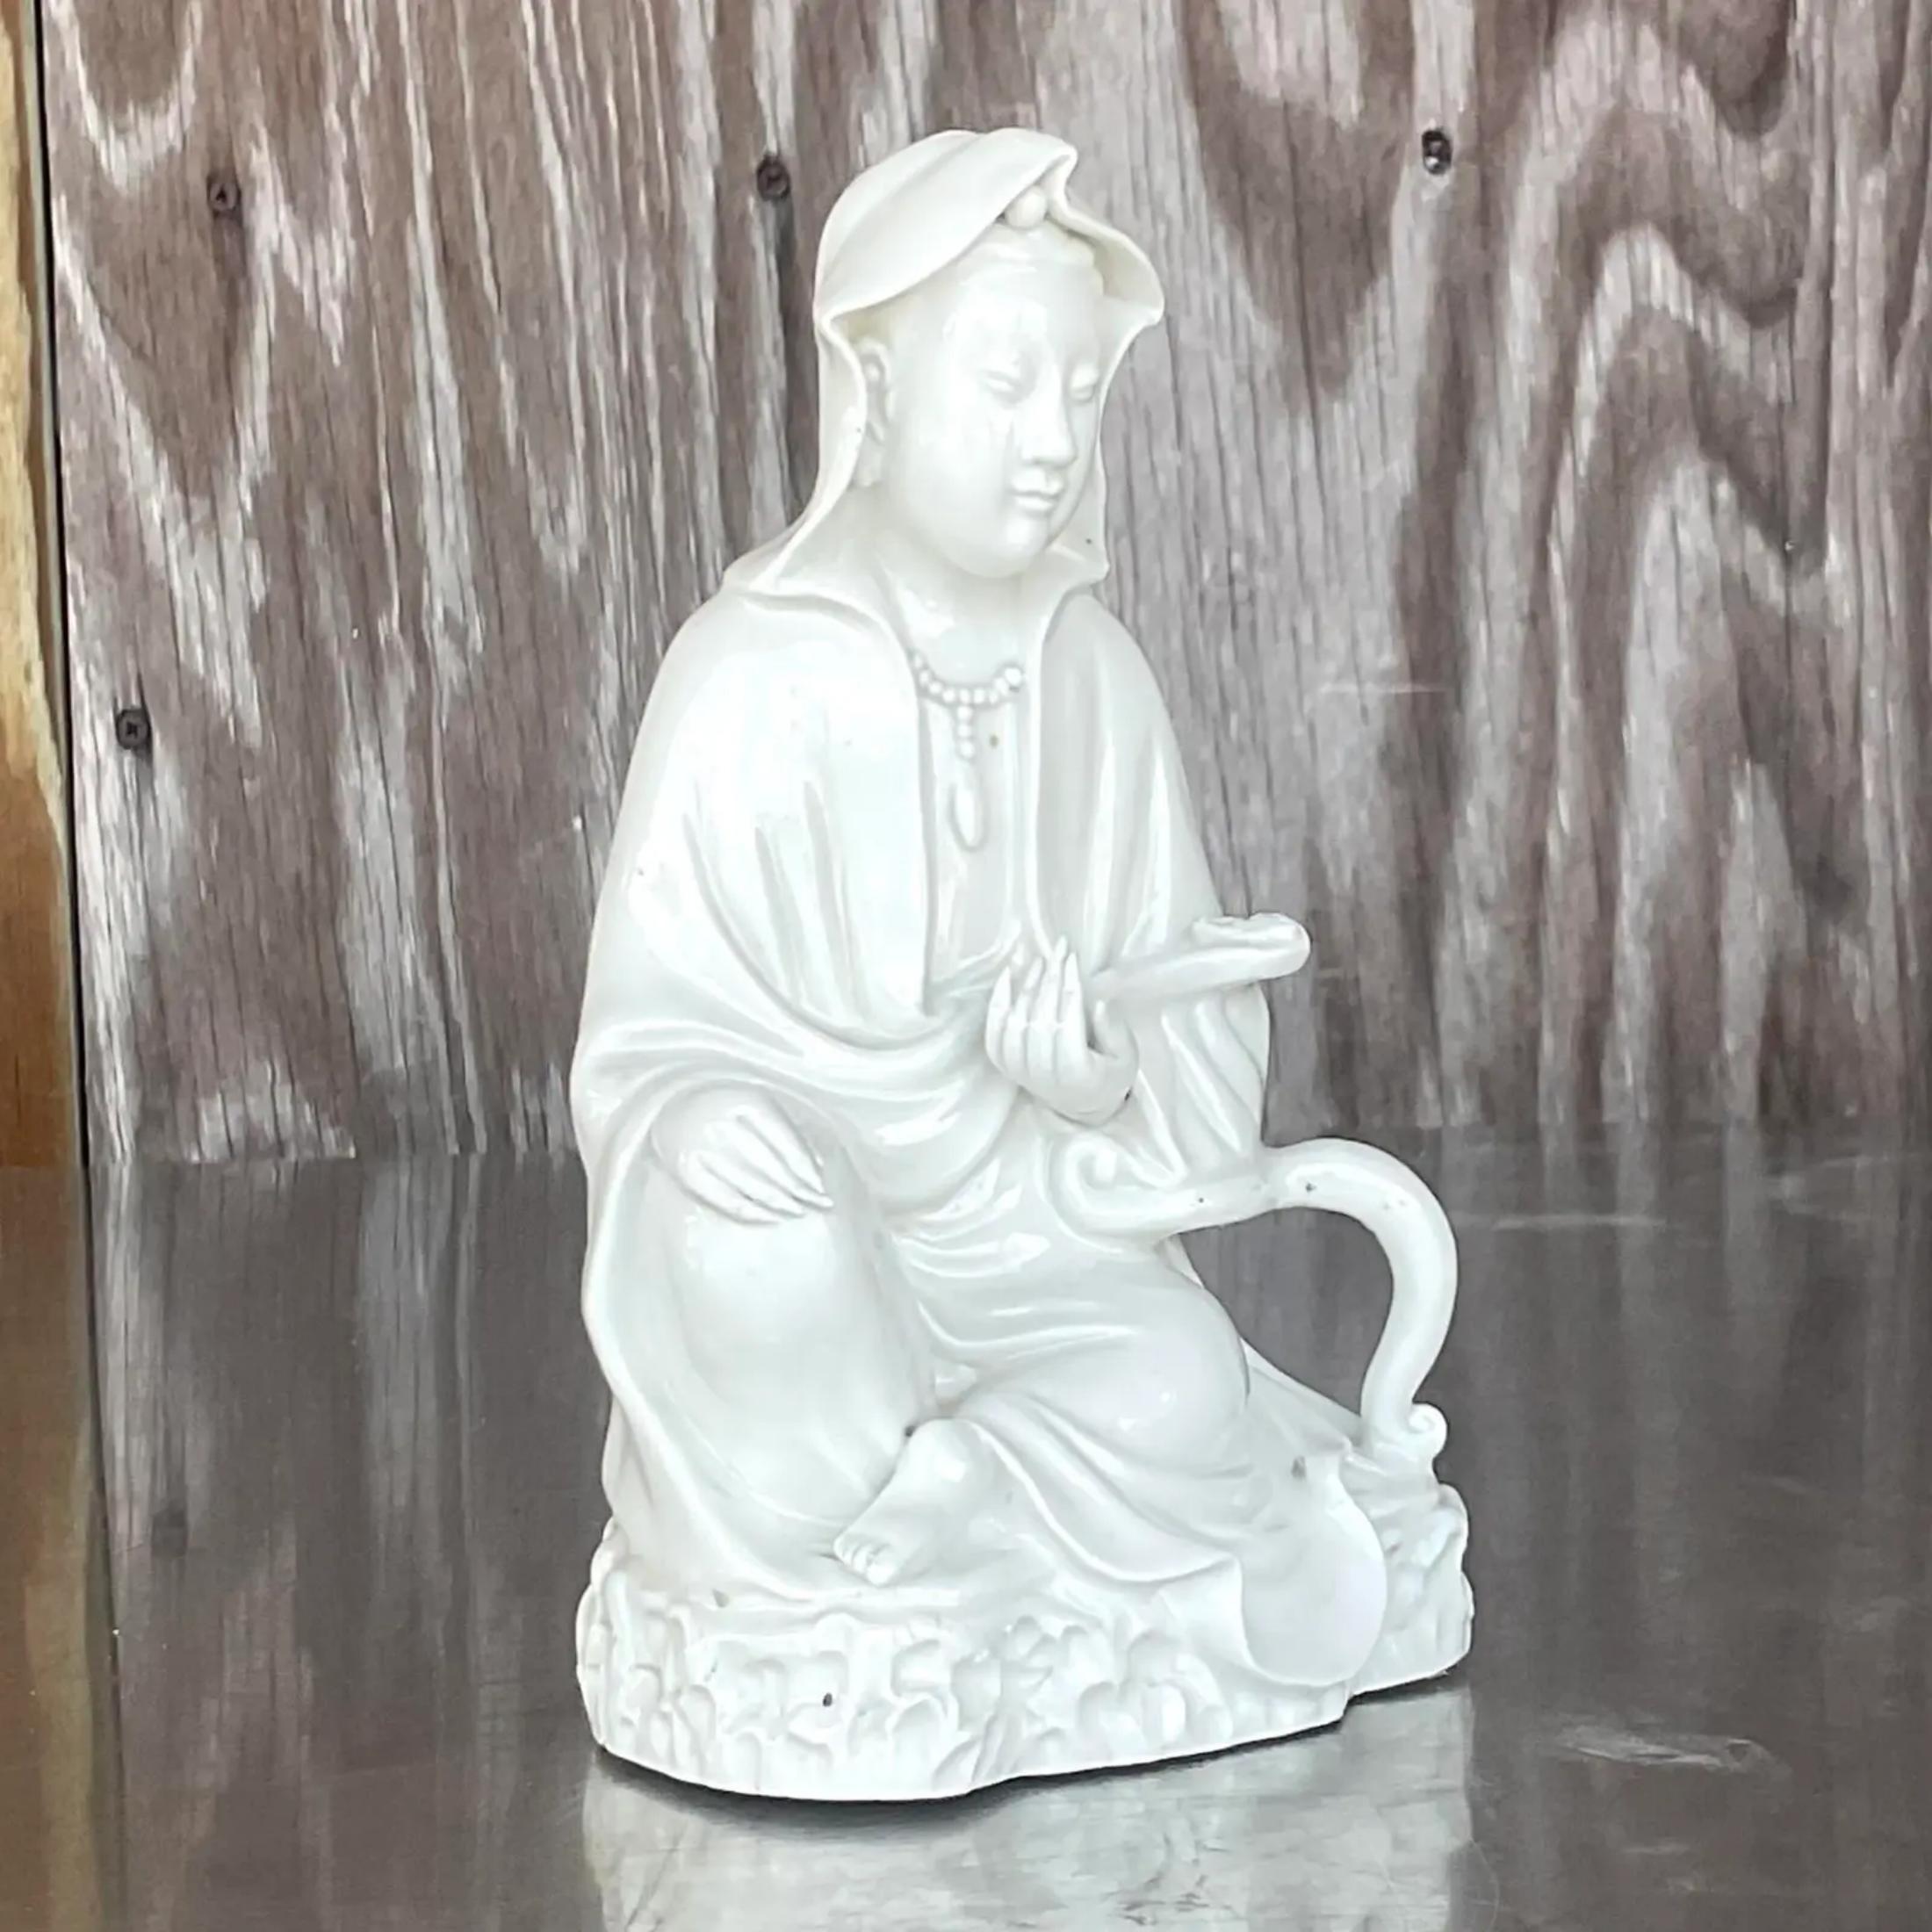 Une fabuleuse figurine asiatique vintage des années 1920. Un design Blanc de Chine chic représentant une belle femme. Estampillé sur le fond.